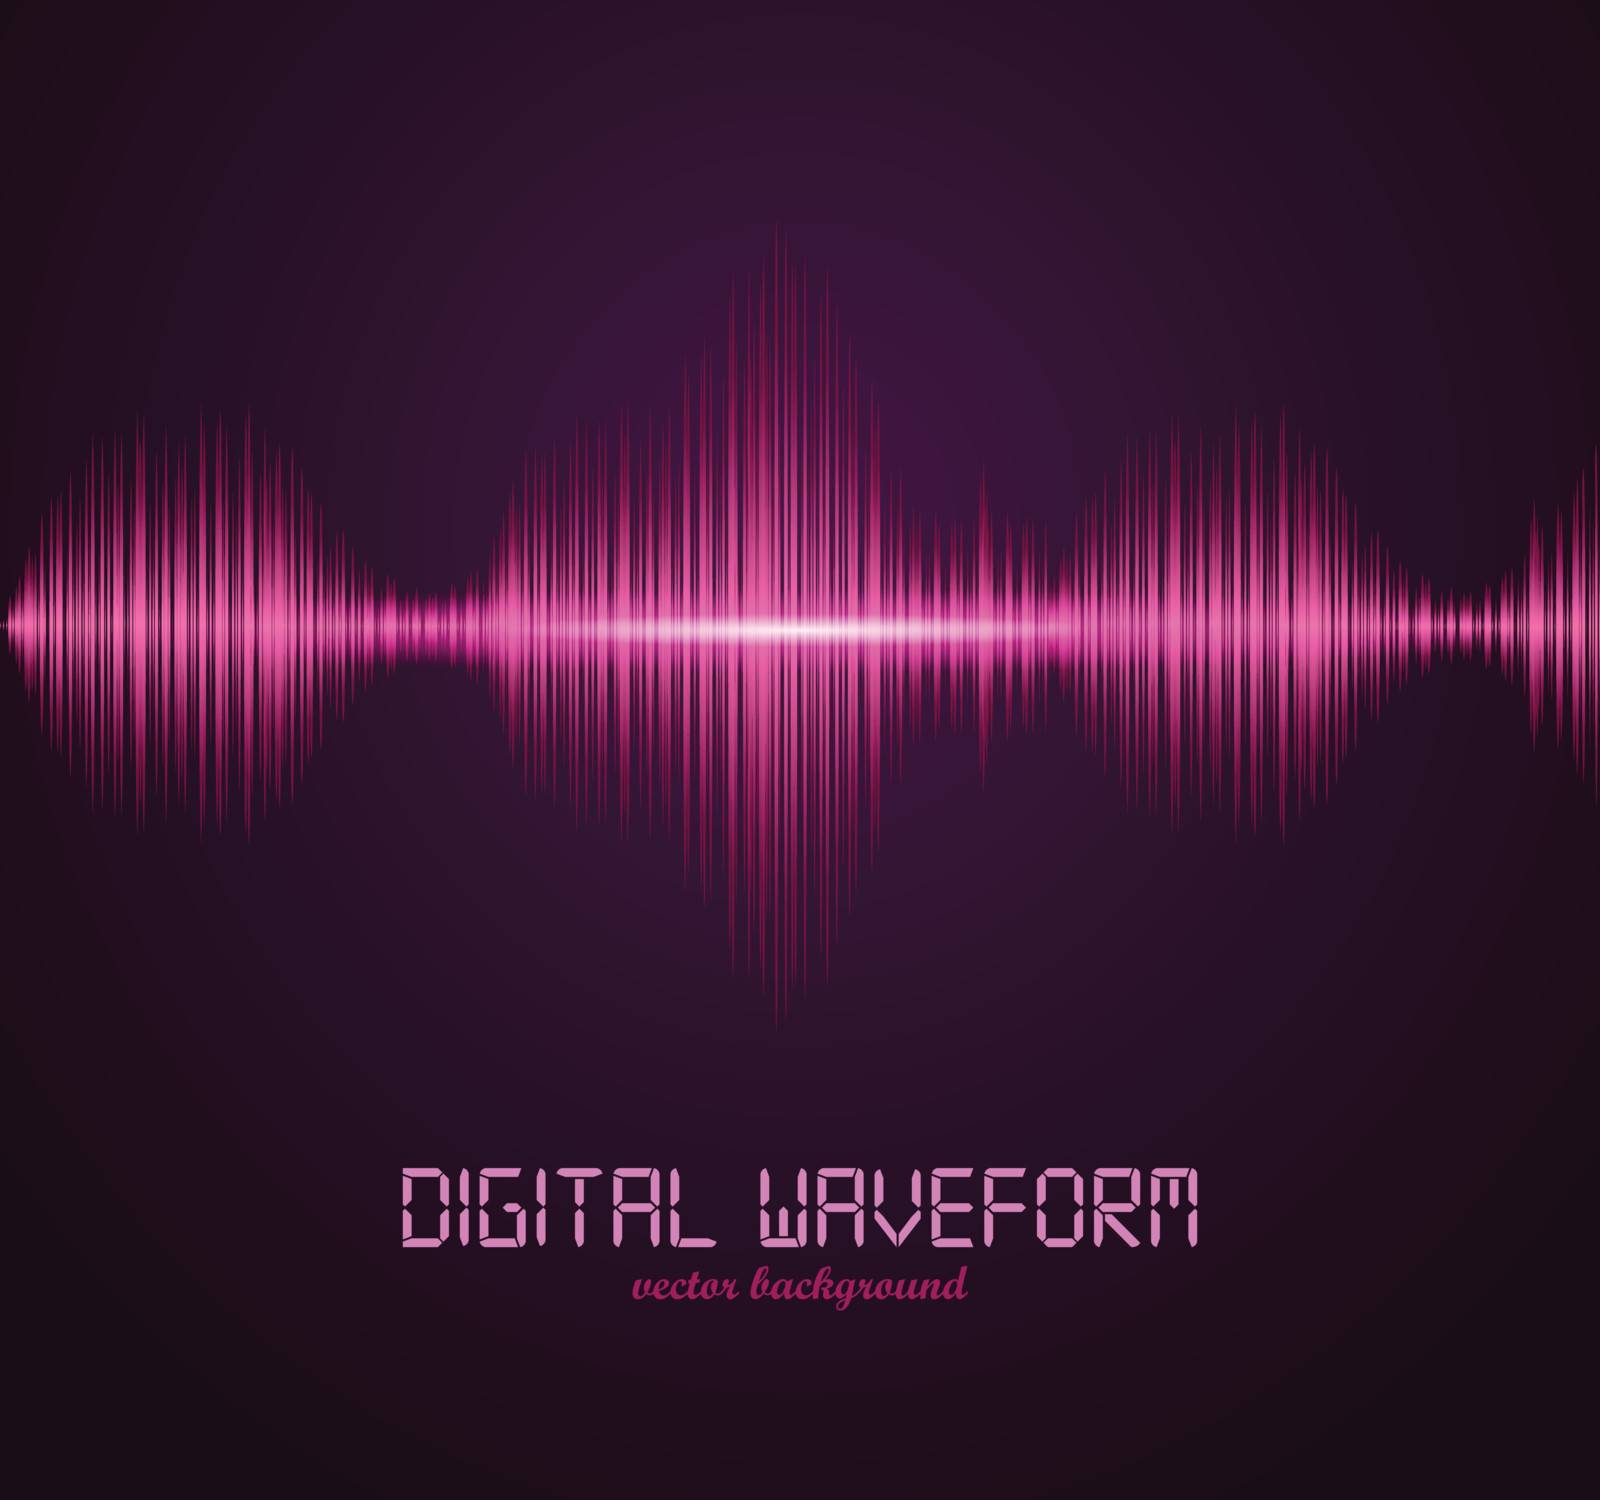 Digital waveform. Vector illustration for your artwork.